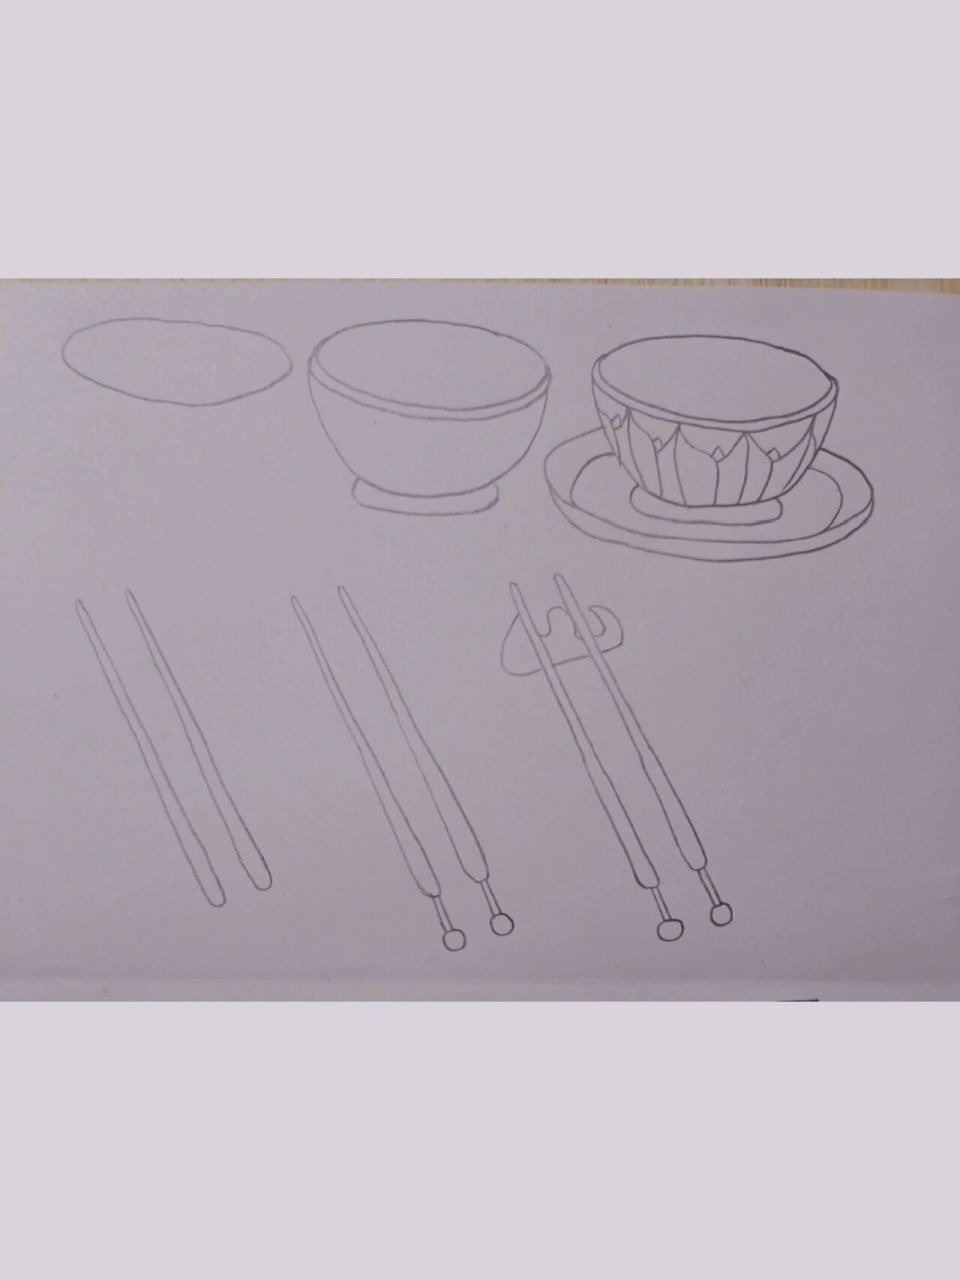 小朋友摆碗筷简笔画图片